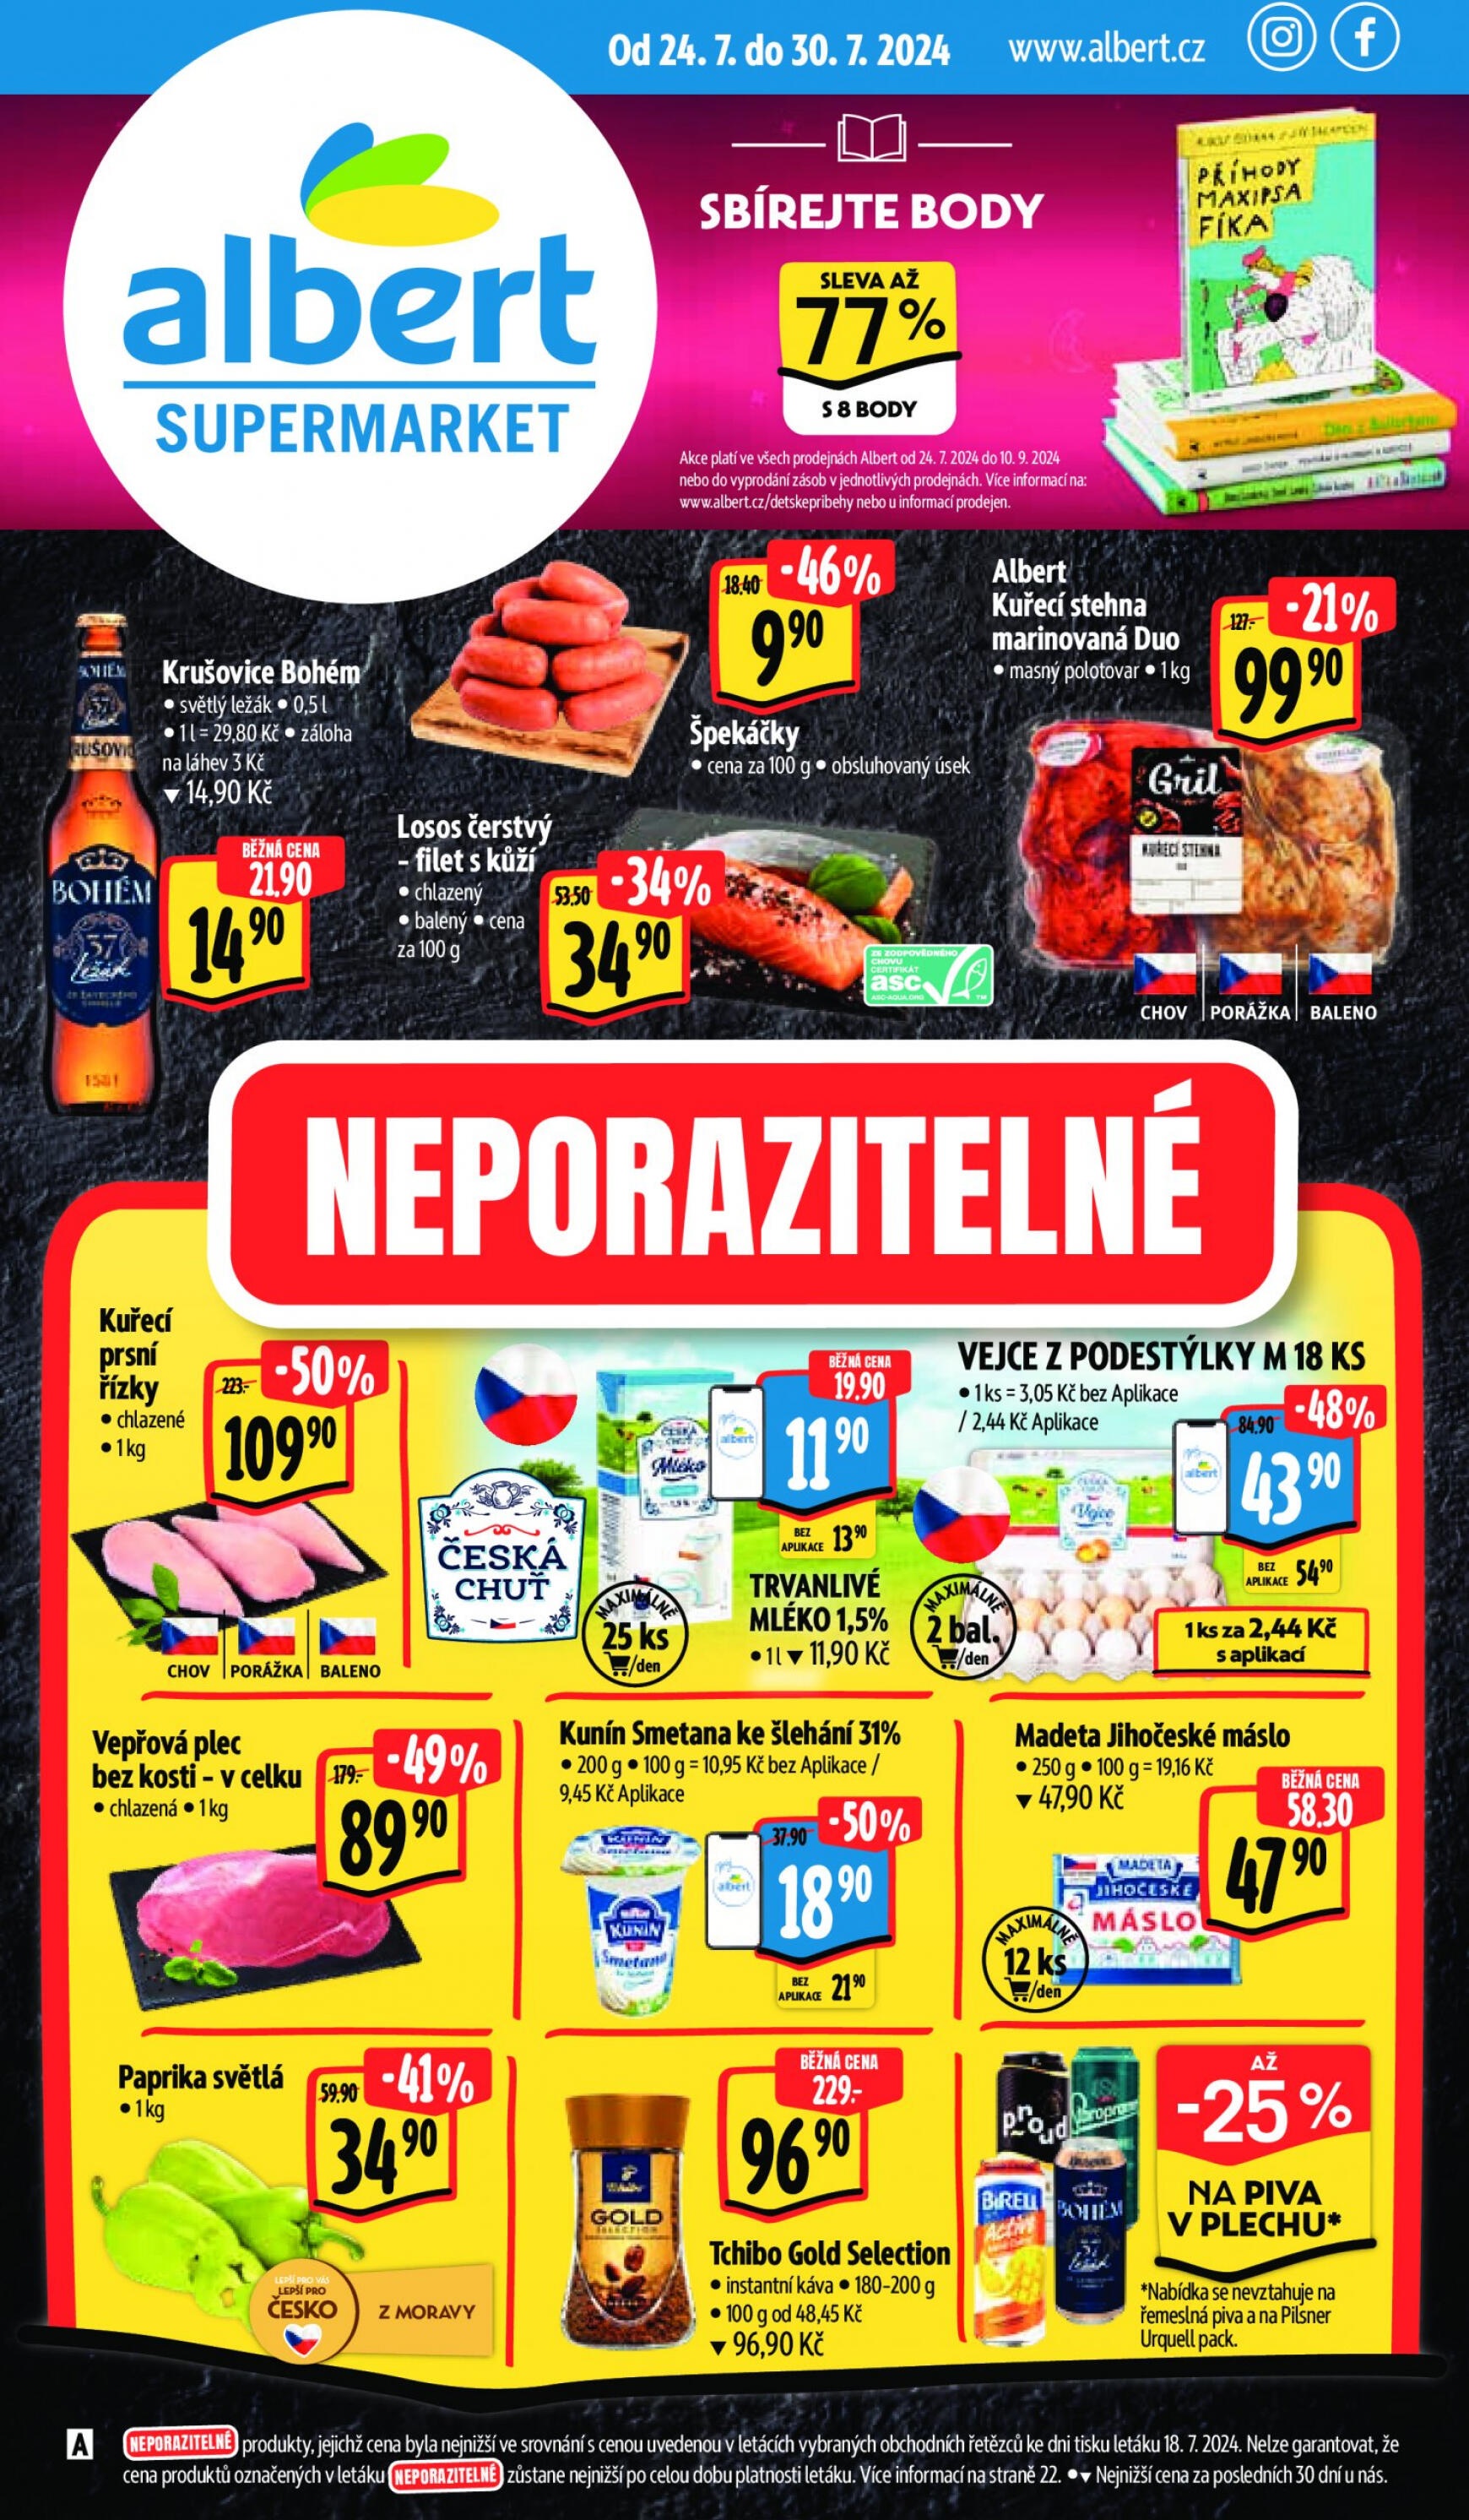 albert - Leták Albert Supermarket od 24.07. do 30.07.